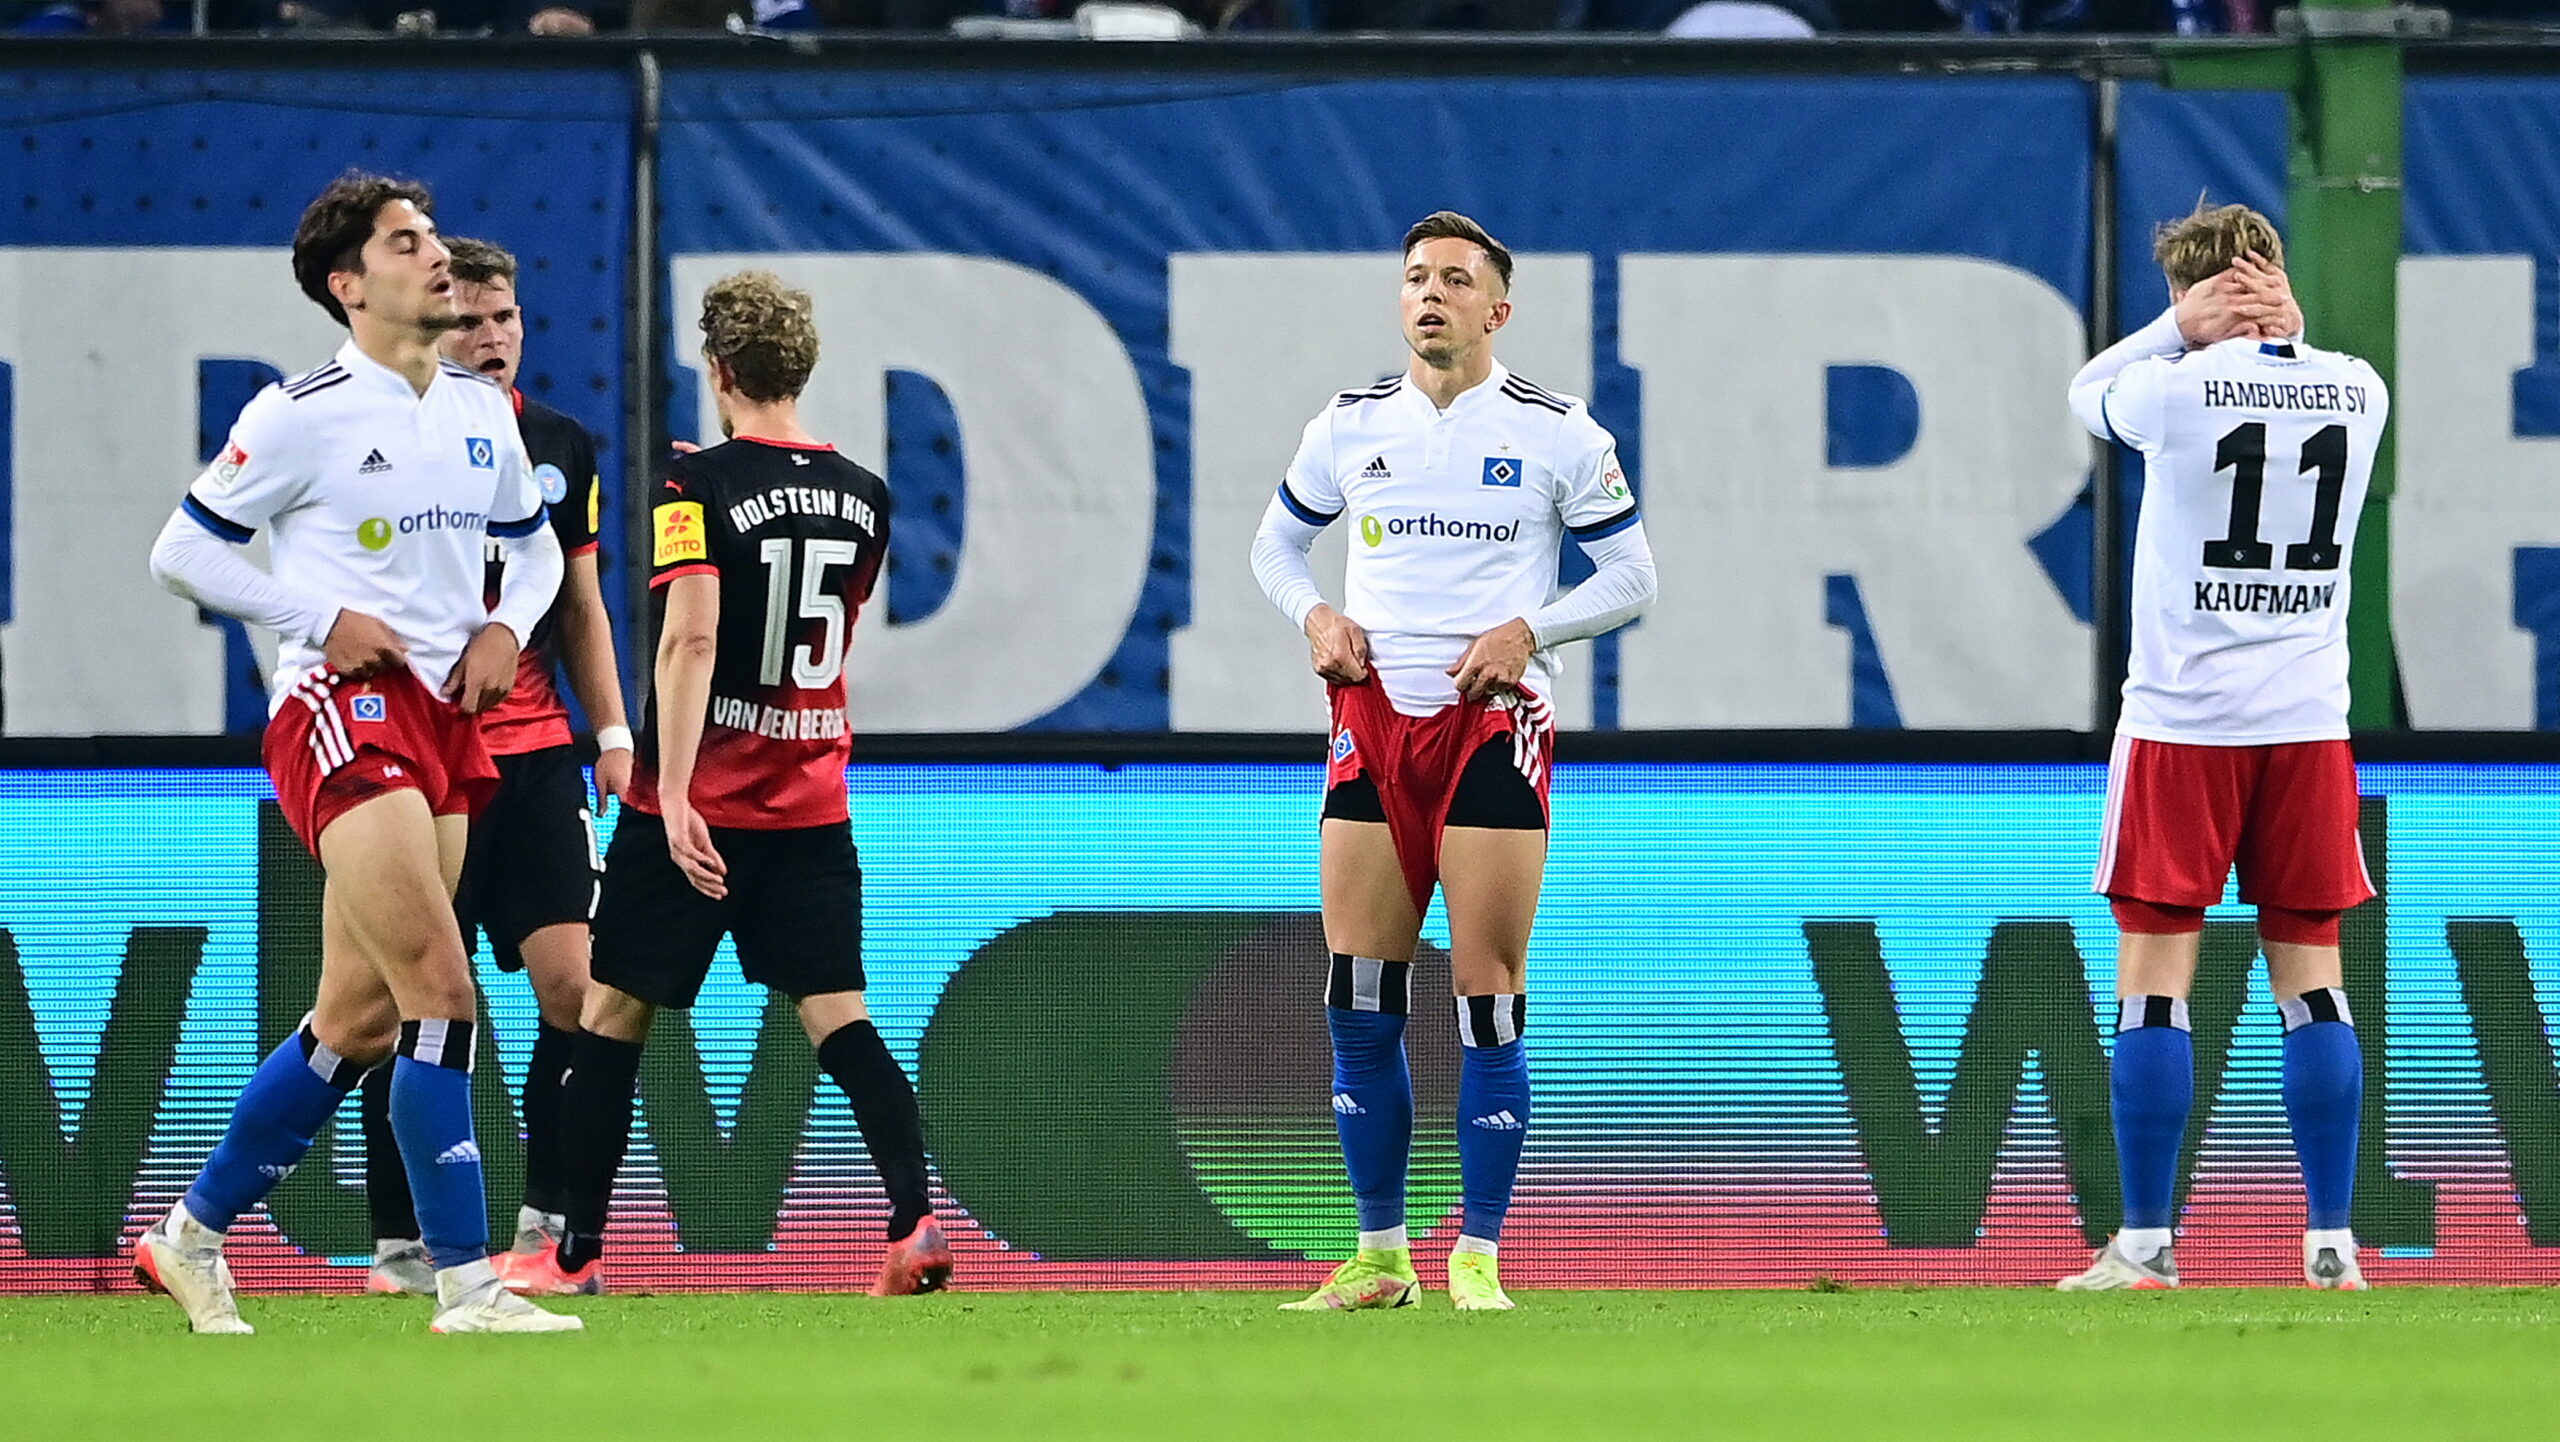 In der Hinrunde spielte der HSV gegen Kiel nur 1:1. Gewonnen haben die Hamburger gegen die Störche in Liga zwei noch nie.